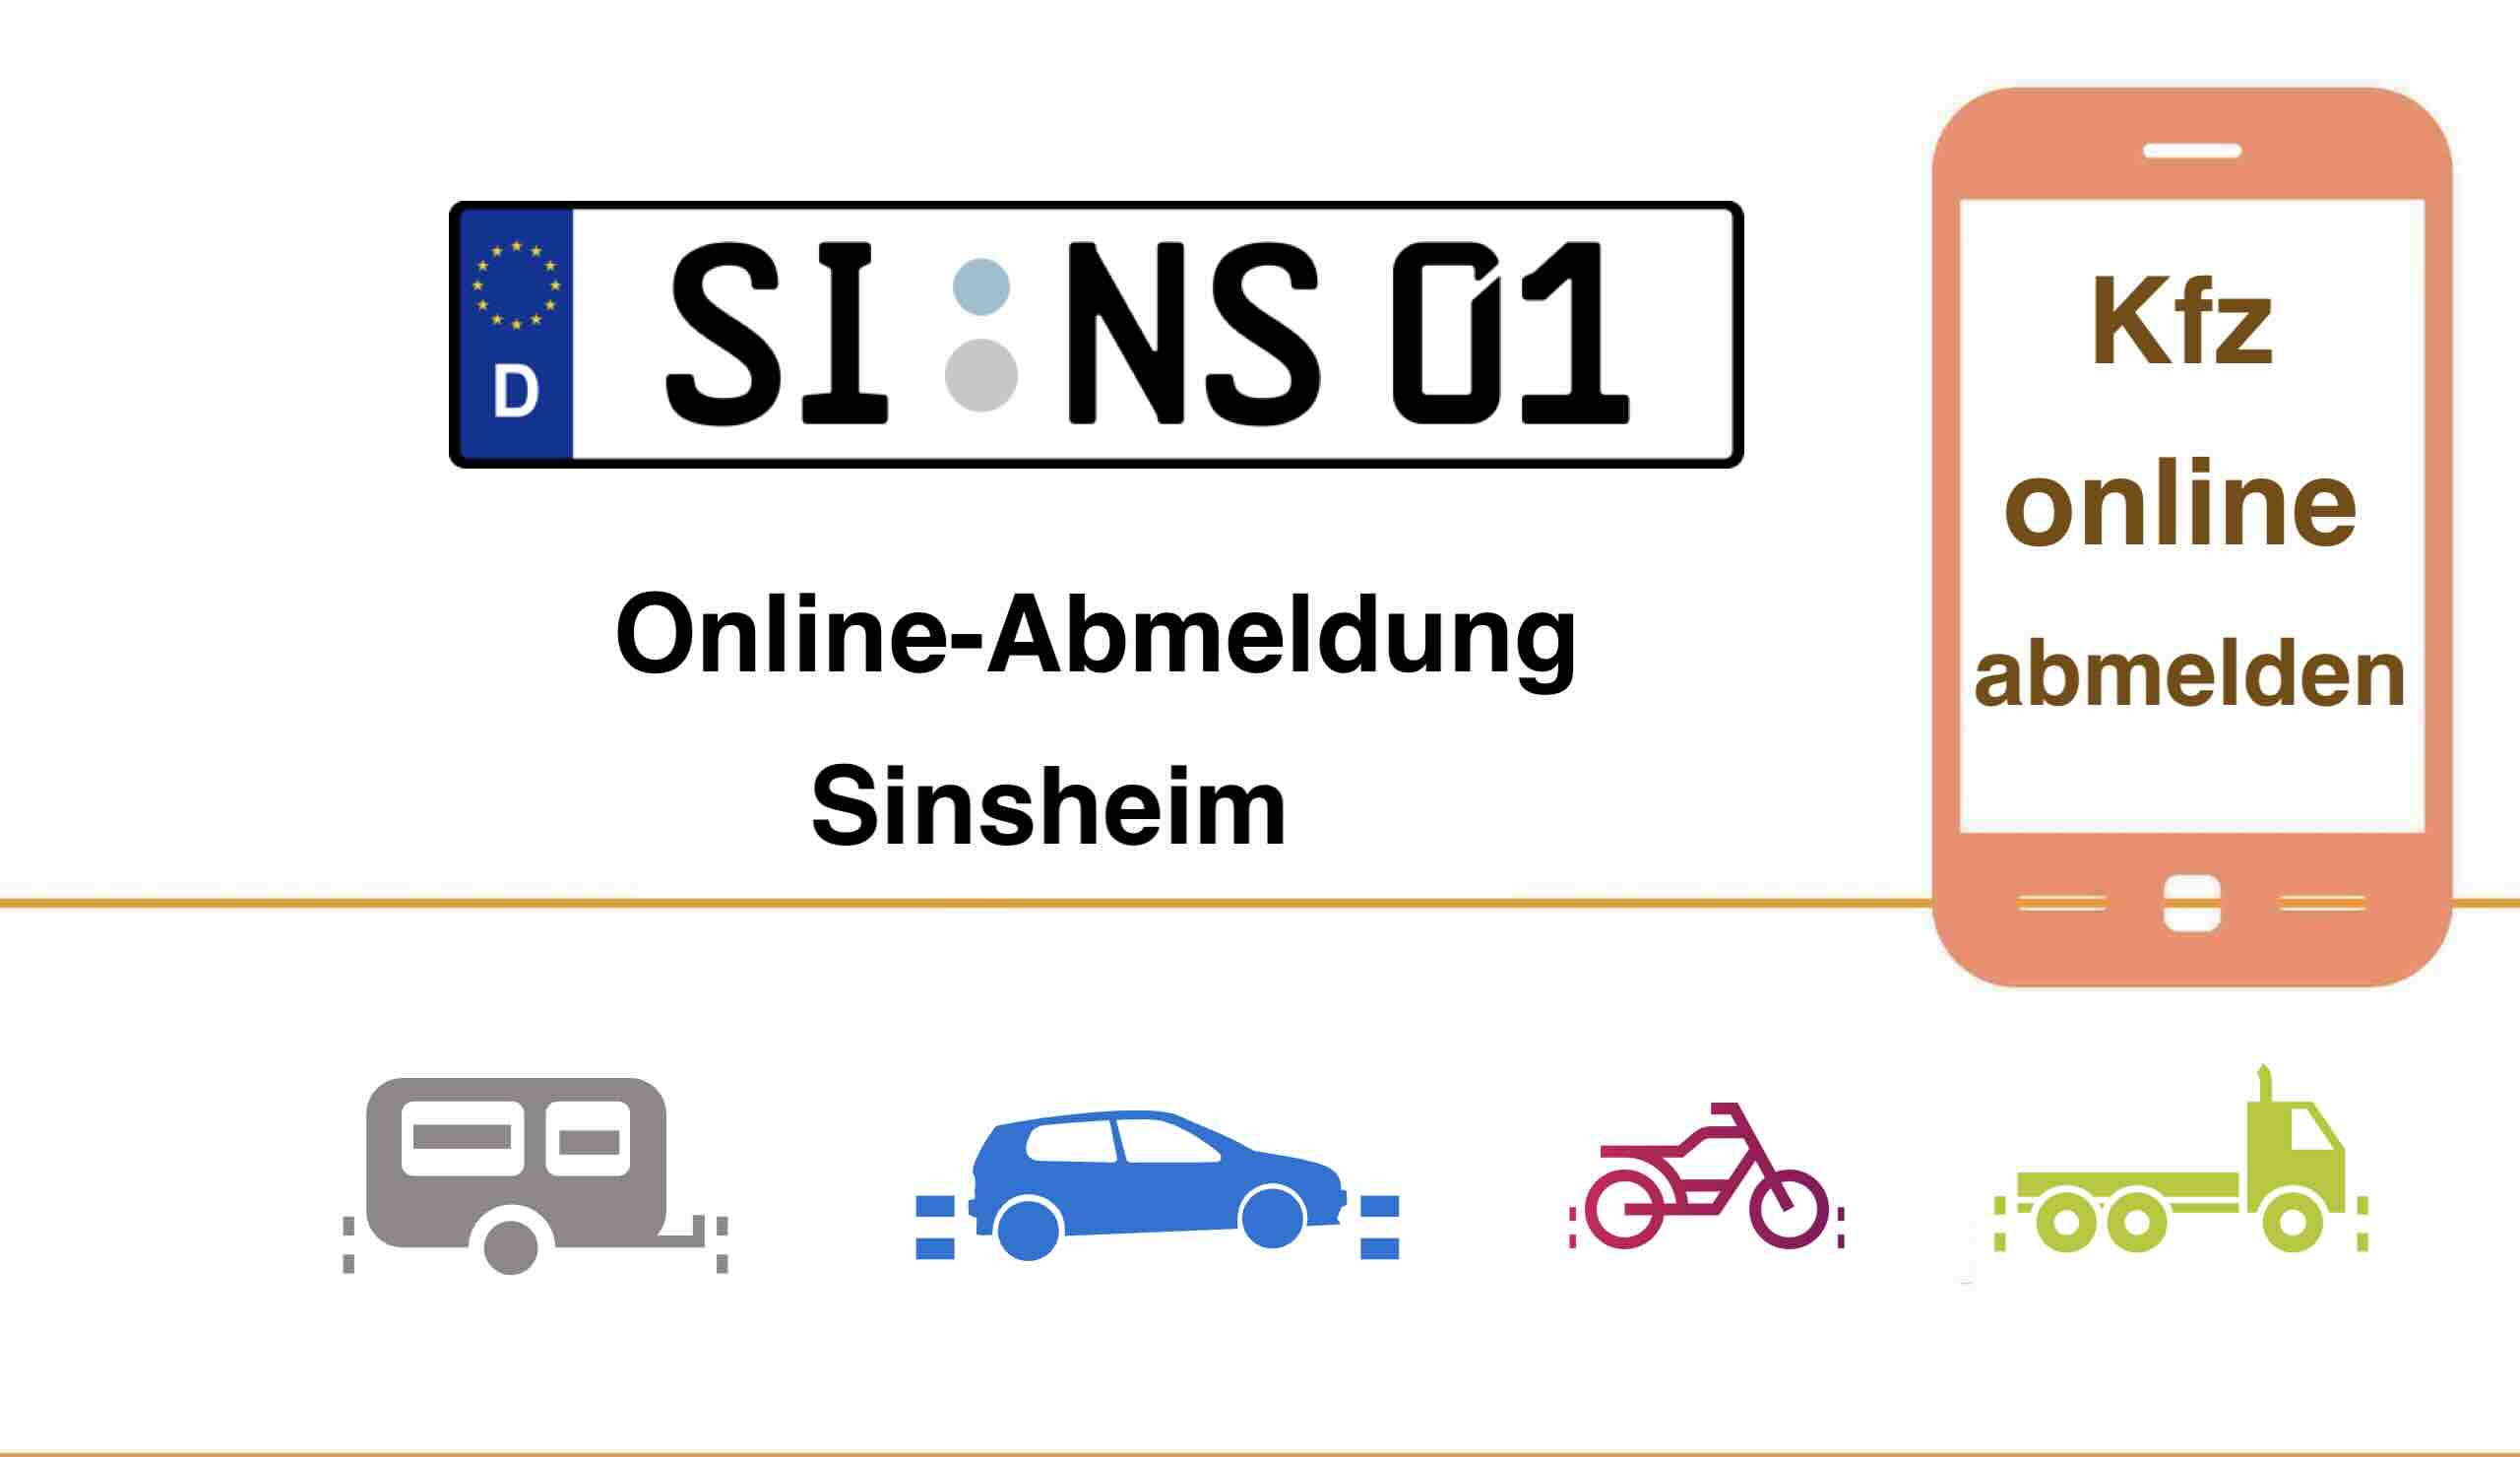 Kfz Online-Abmeldung in Sinsheim 